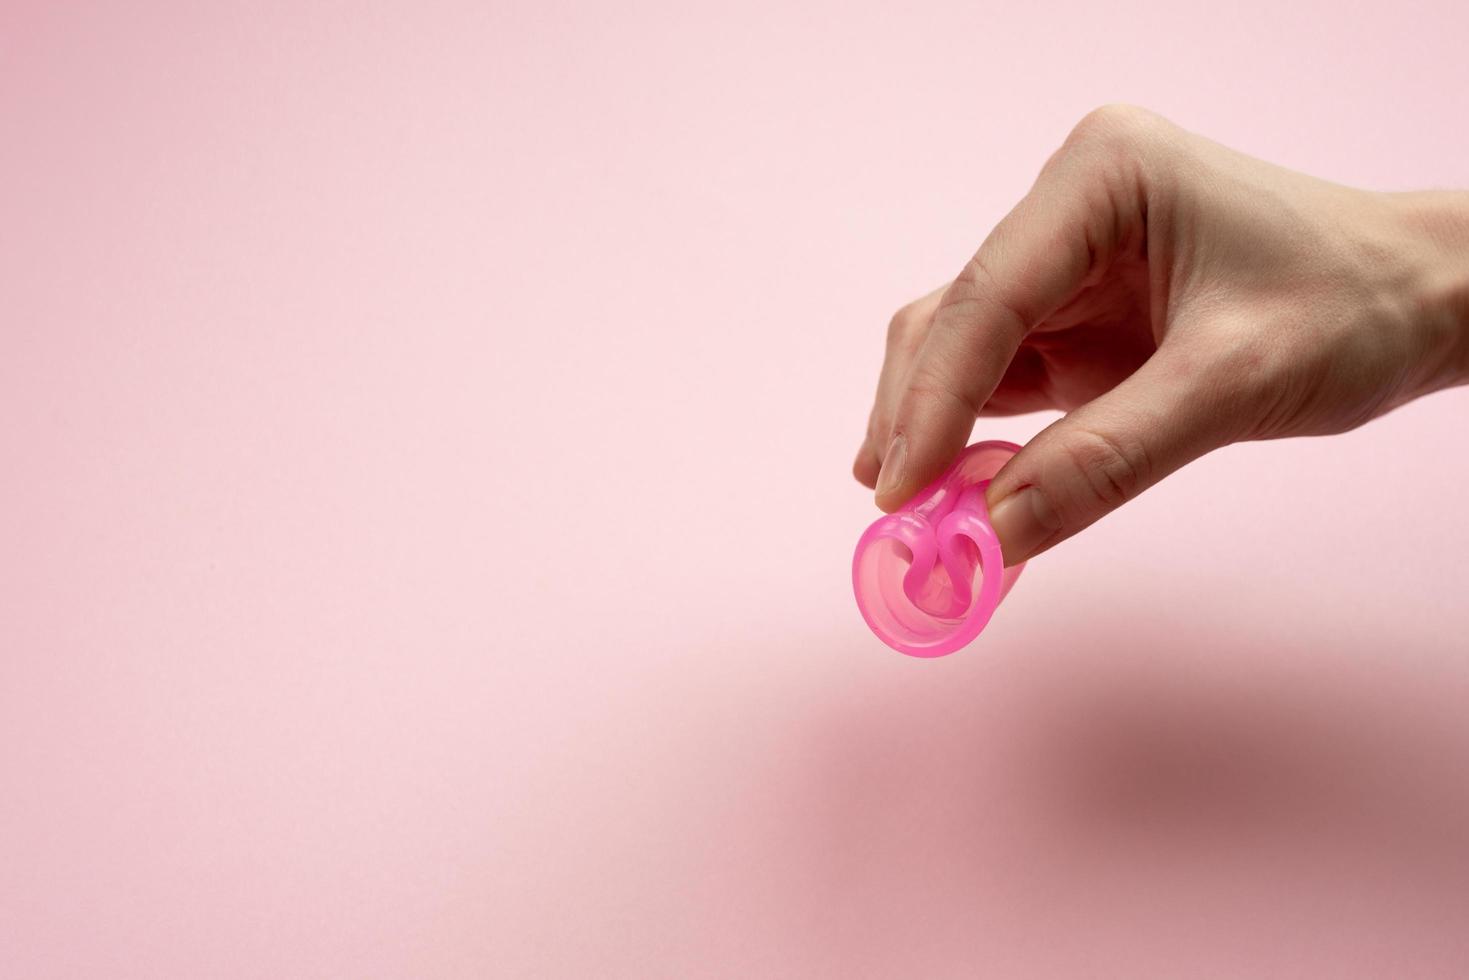 las manos femeninas muestran cómo usar una copa menstrual. foto